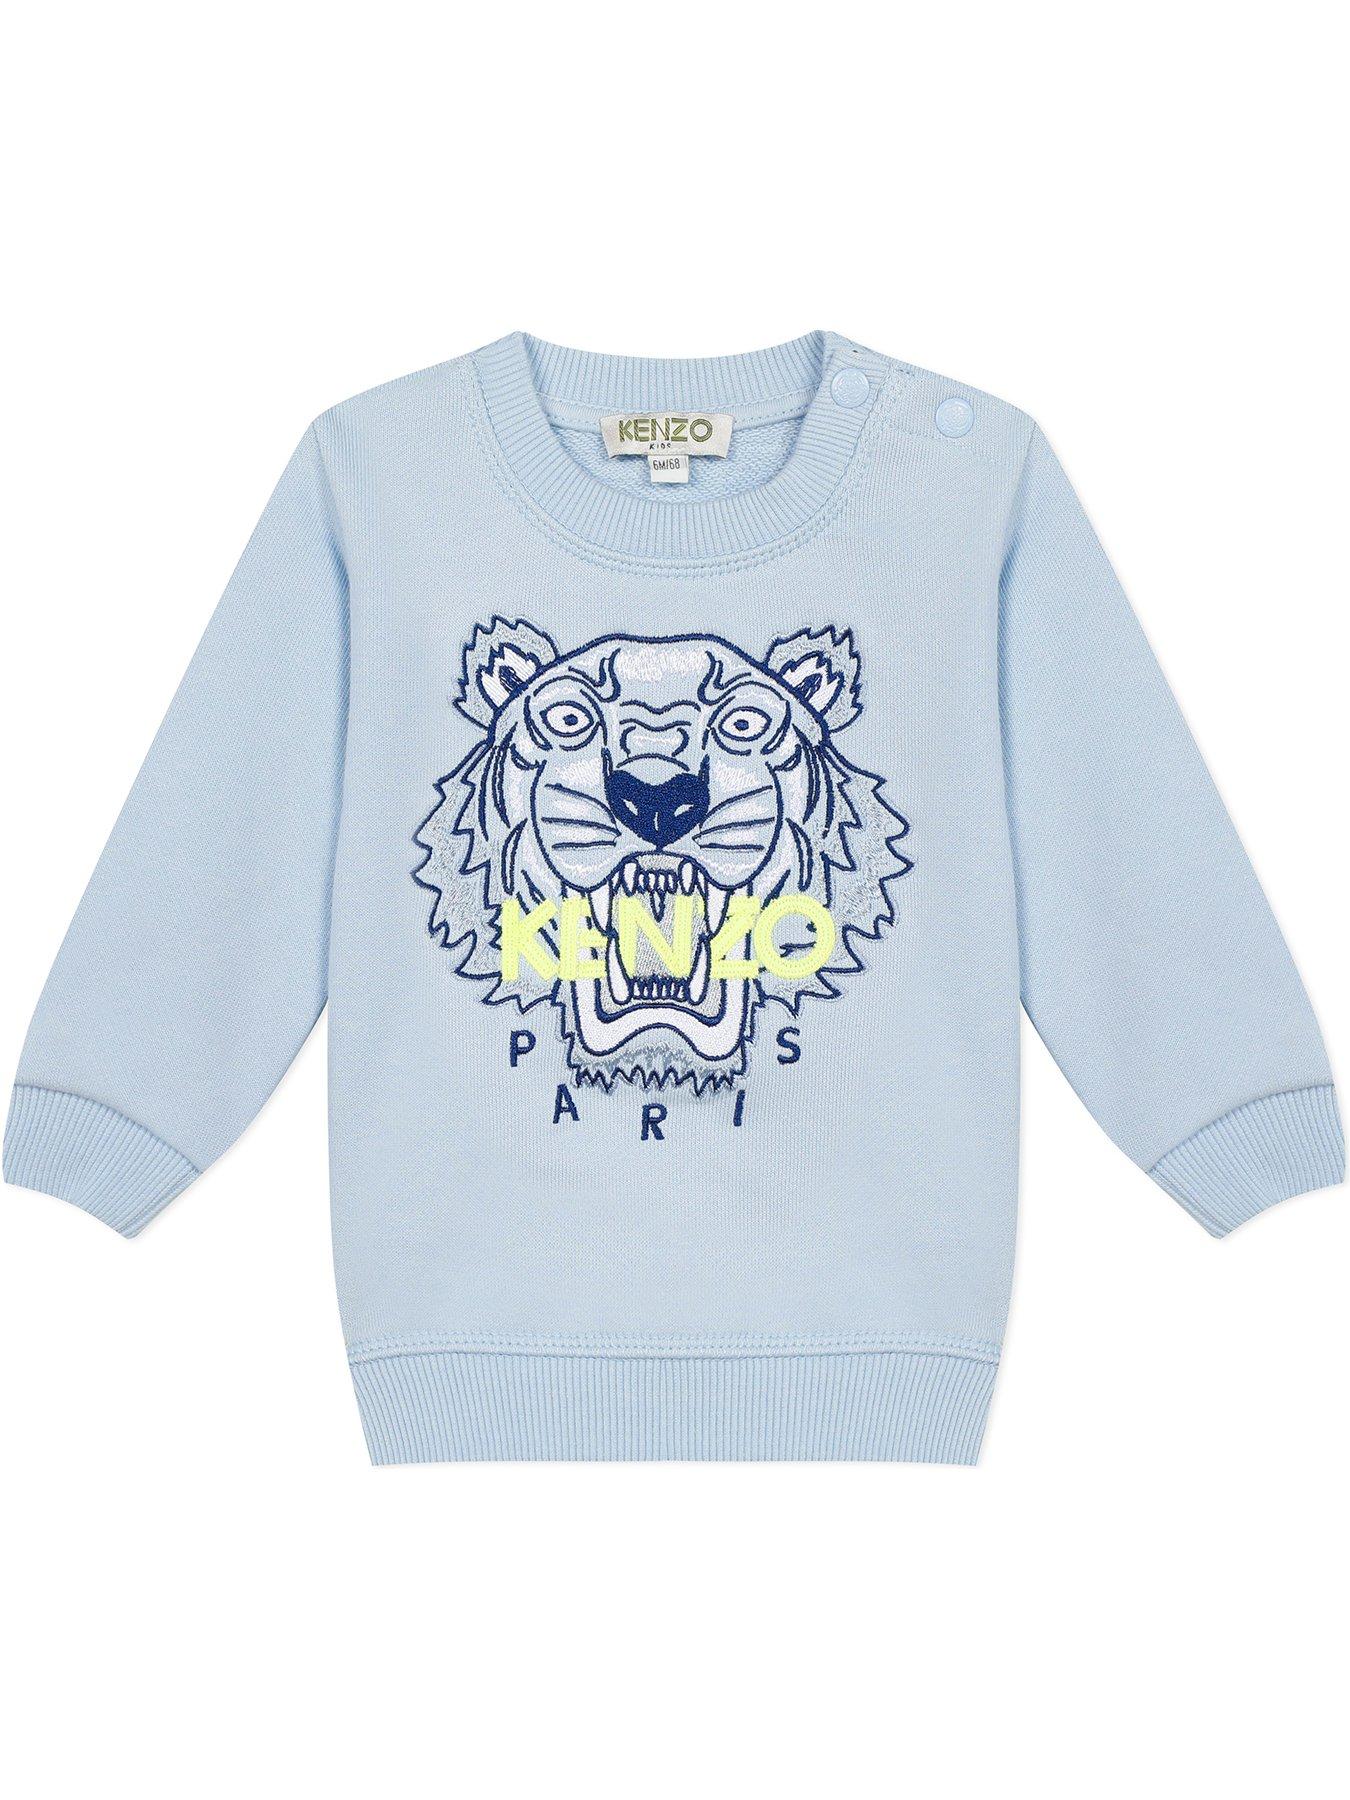 baby boy kenzo sweatshirt